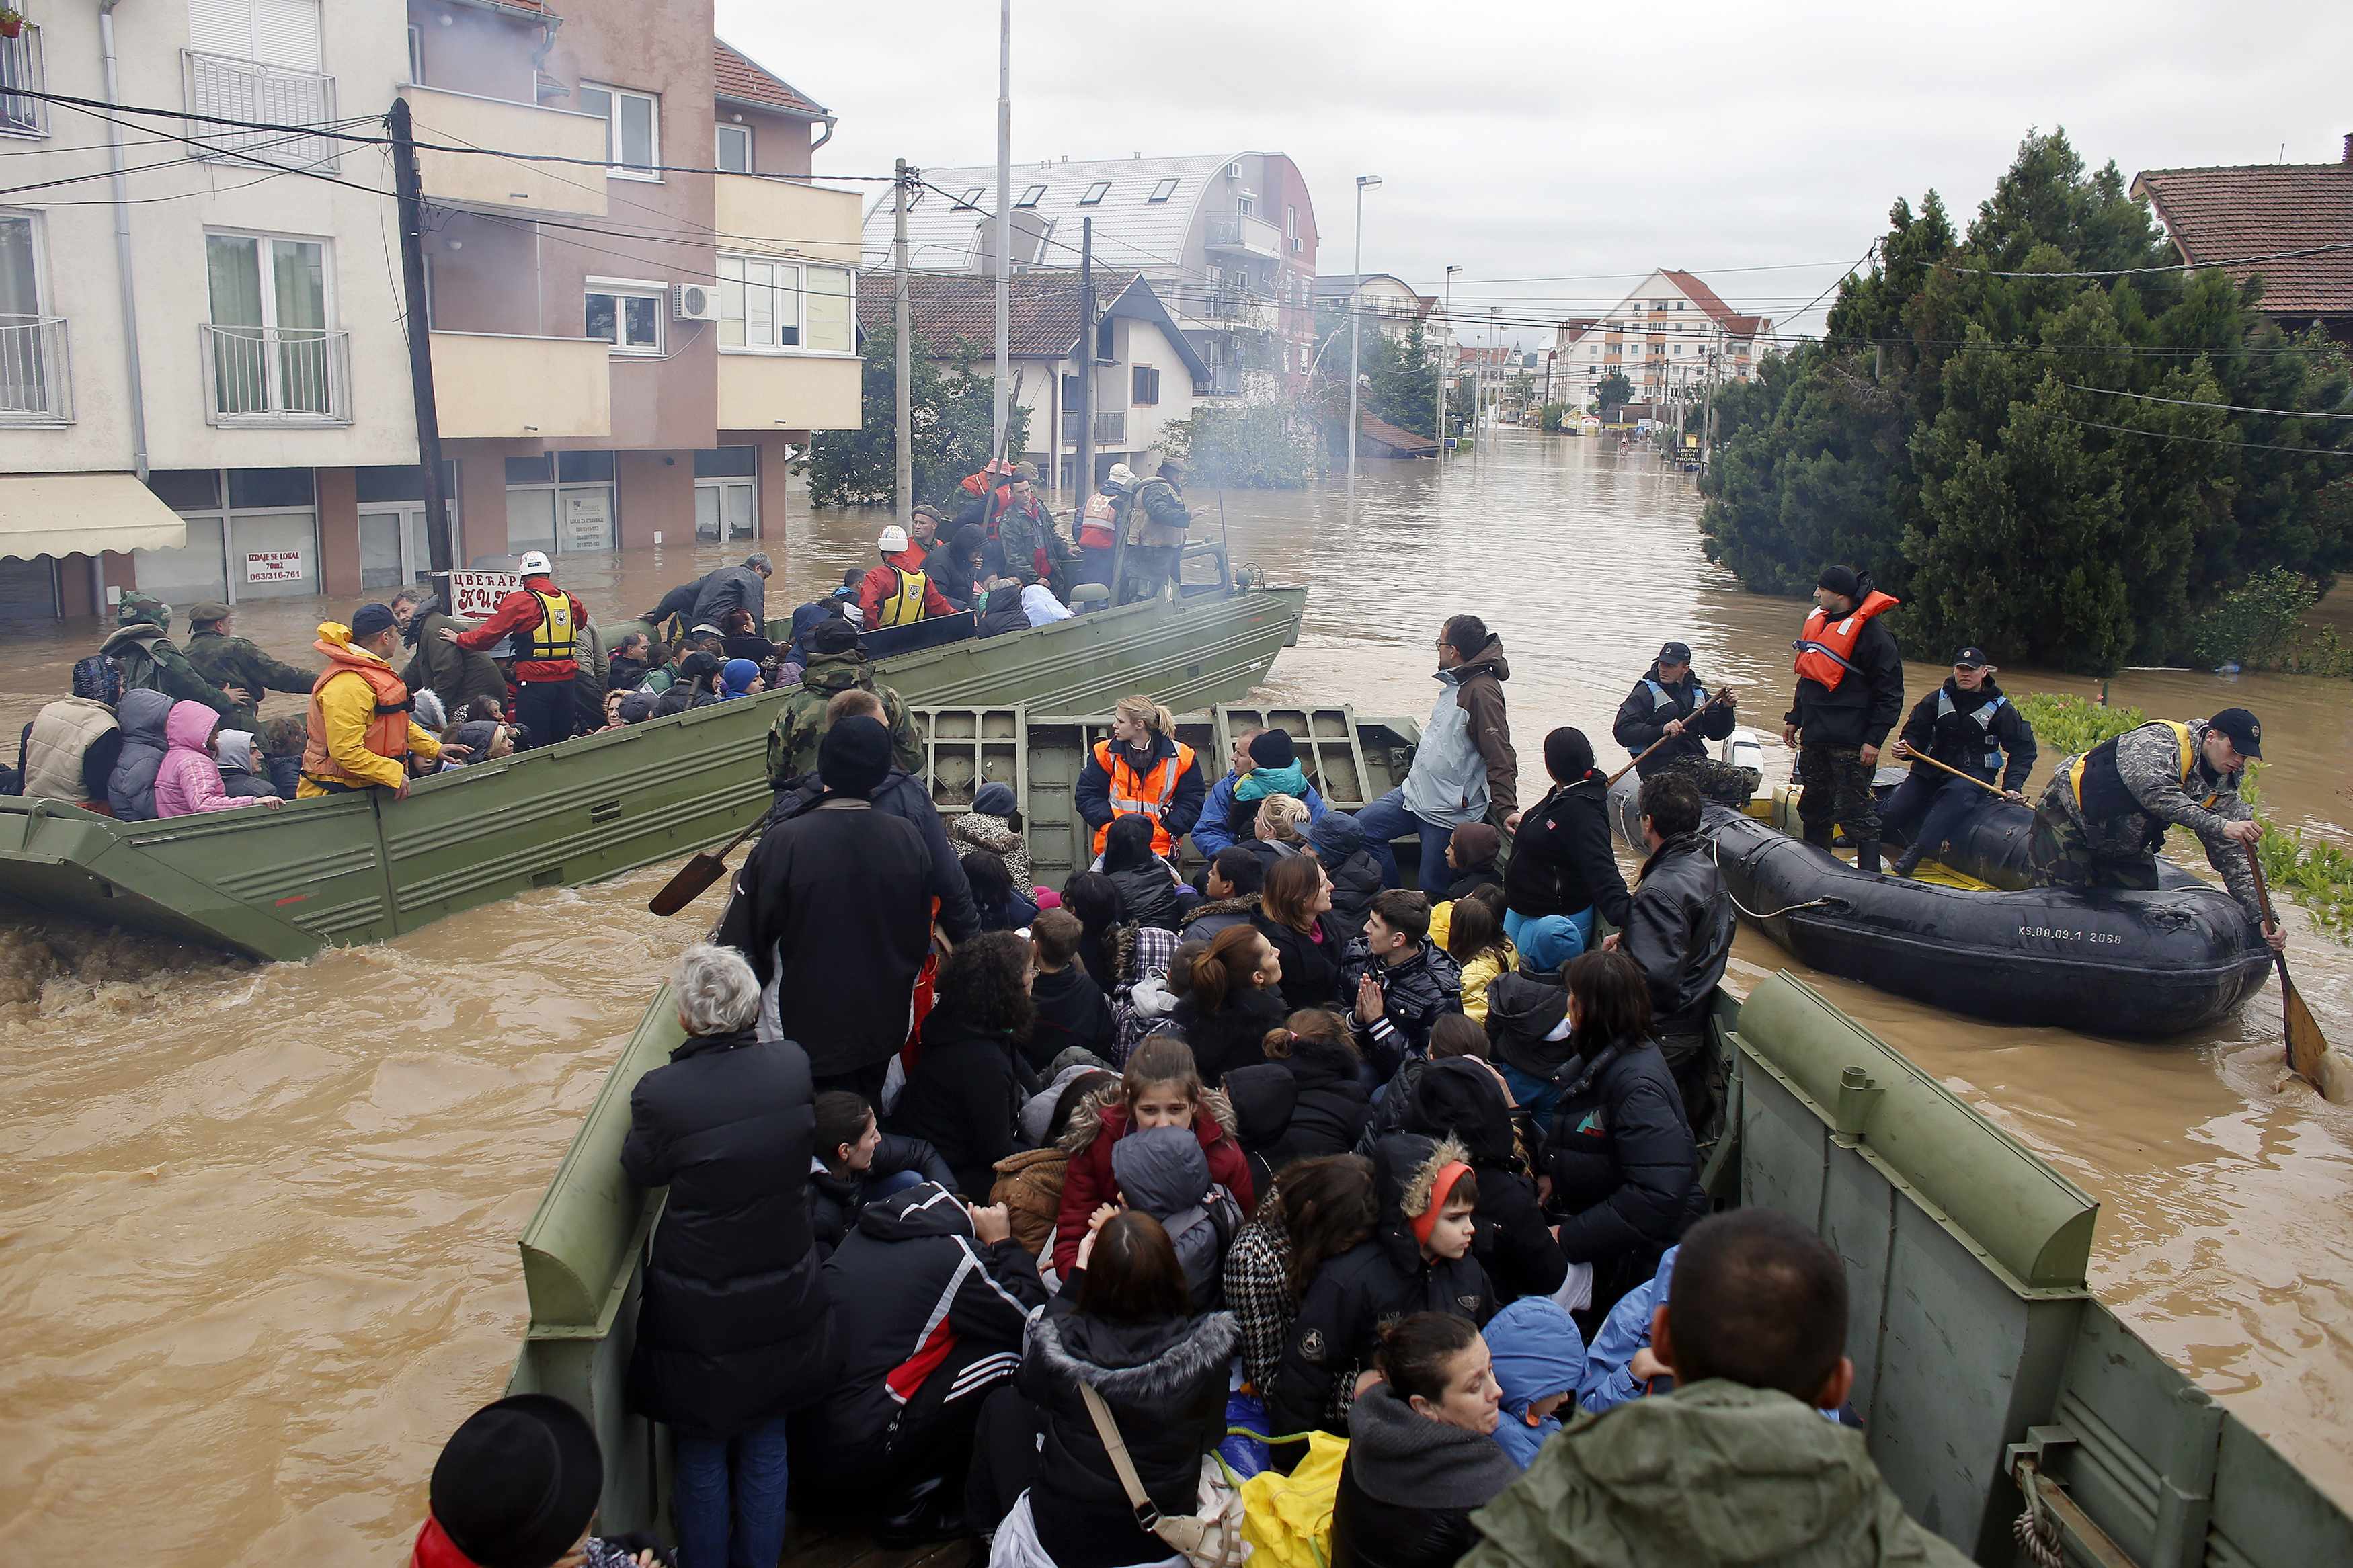 Спасение людей при чрезвычайных ситуациях. Наводнение в Сербии 2014. Чрезвычайная ситуация наводнение. Спасение людей из затопленного города. Наводнение в Сербии.